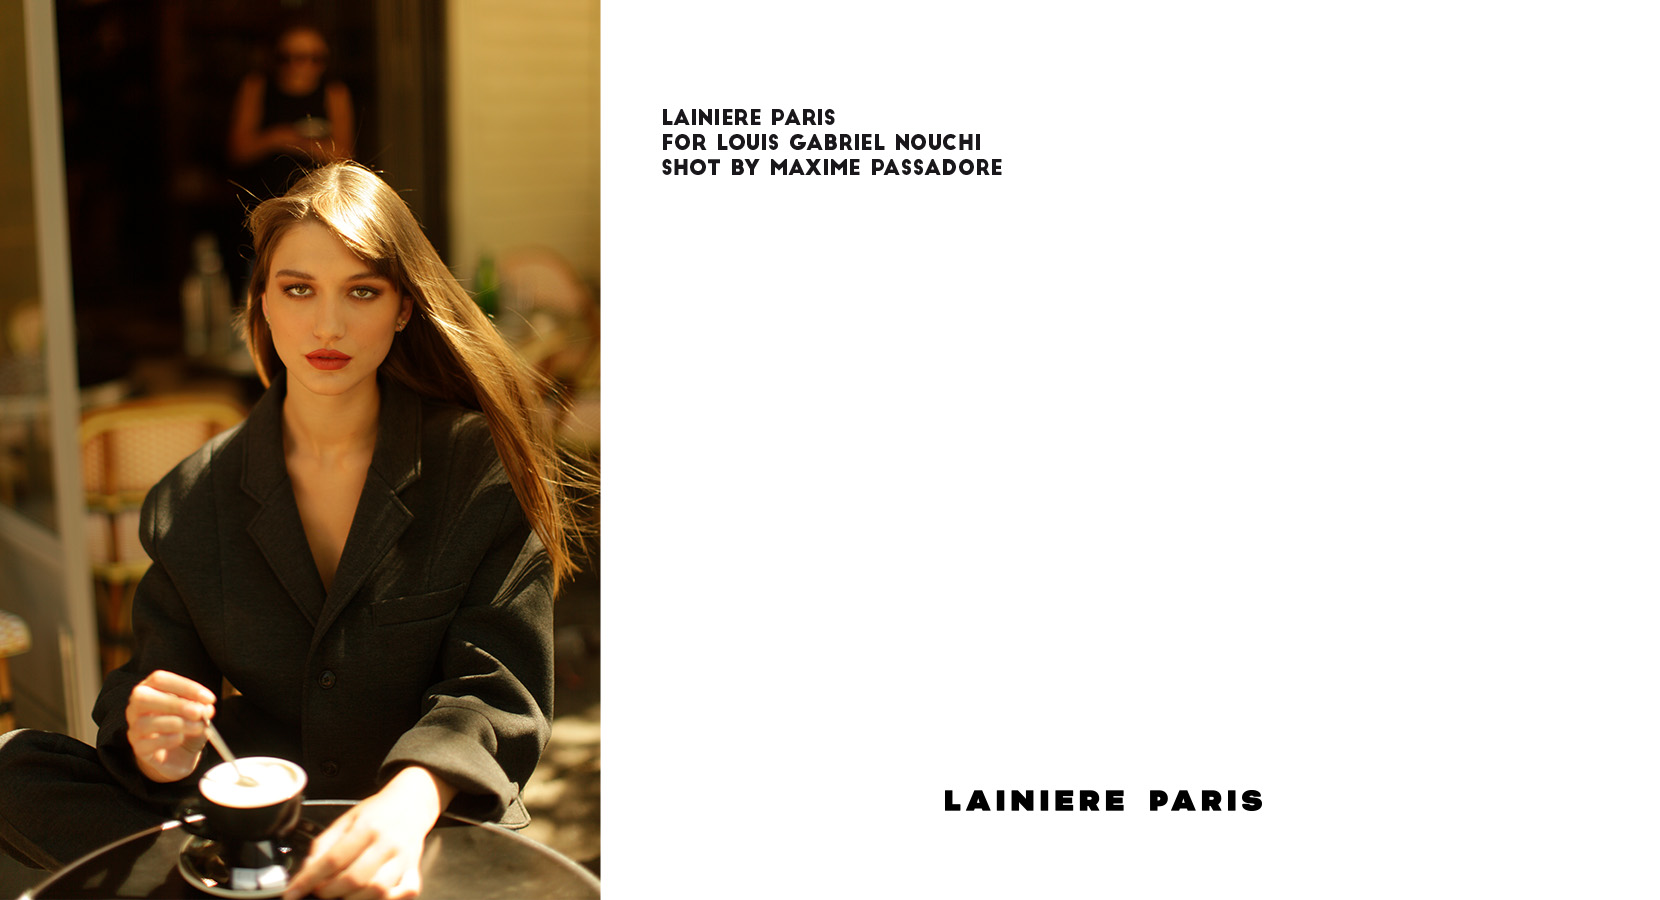 Lainière Paris 3697 - Nash and Young